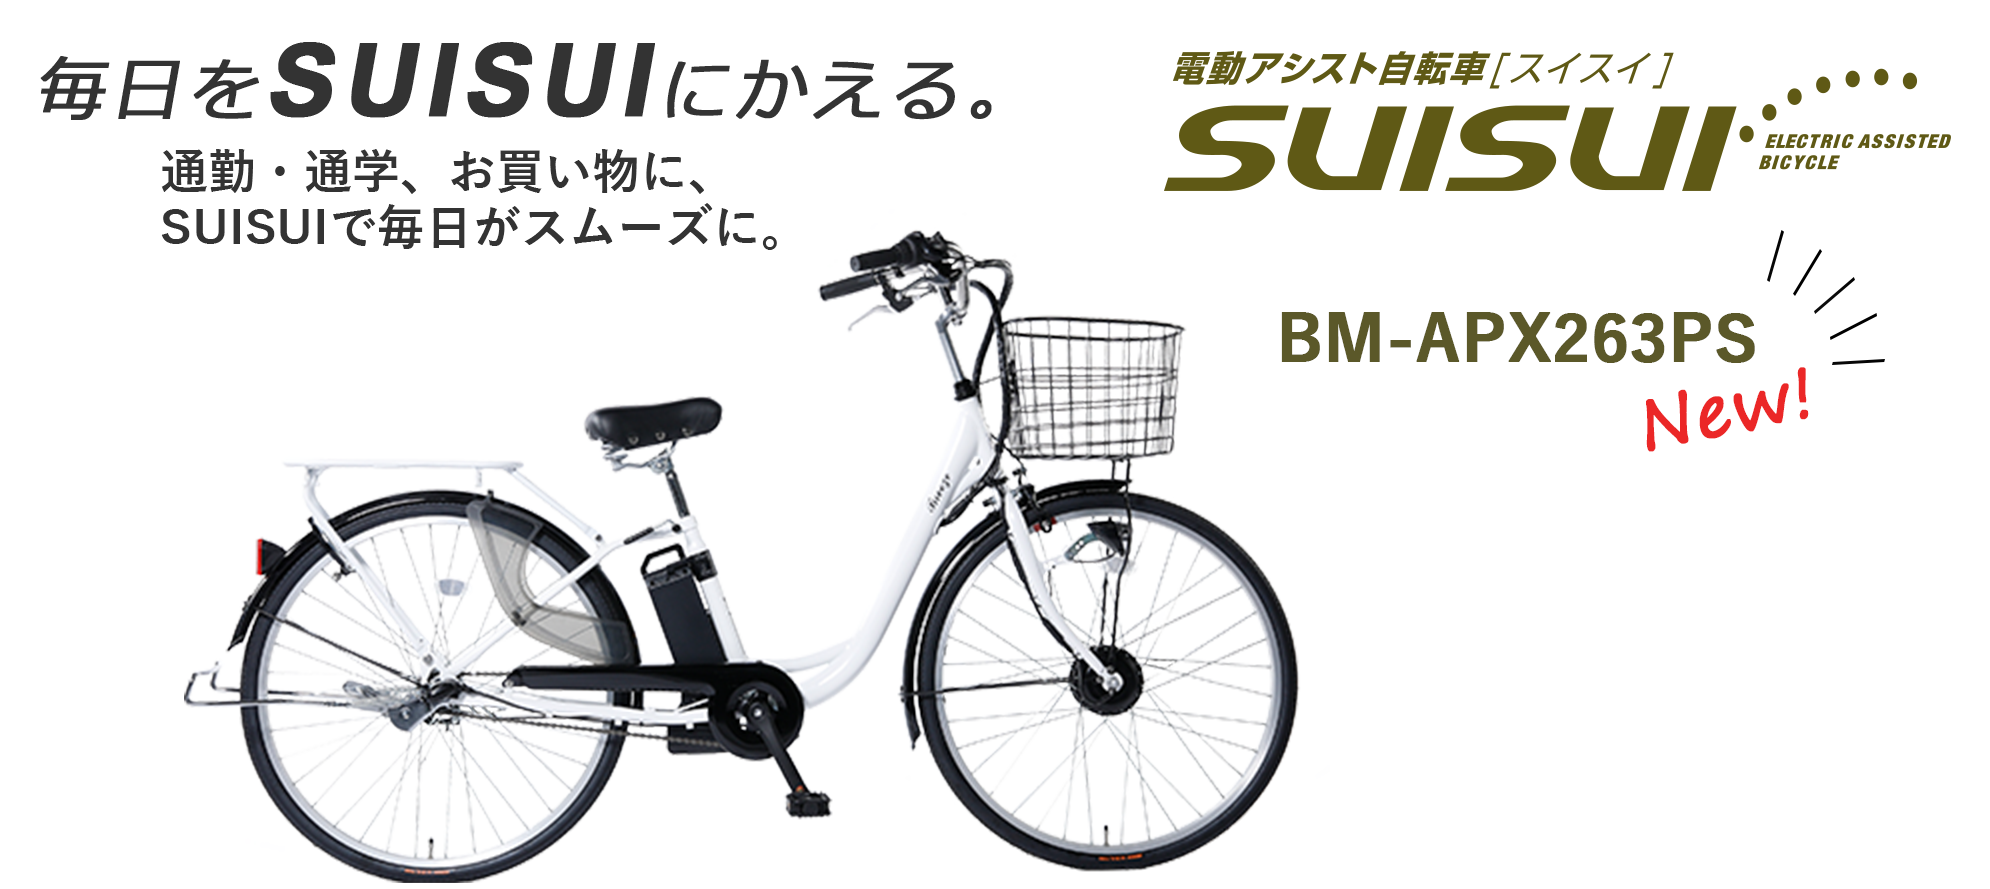 充実の機能が満載の電動アシスト自転車「SUISUI」